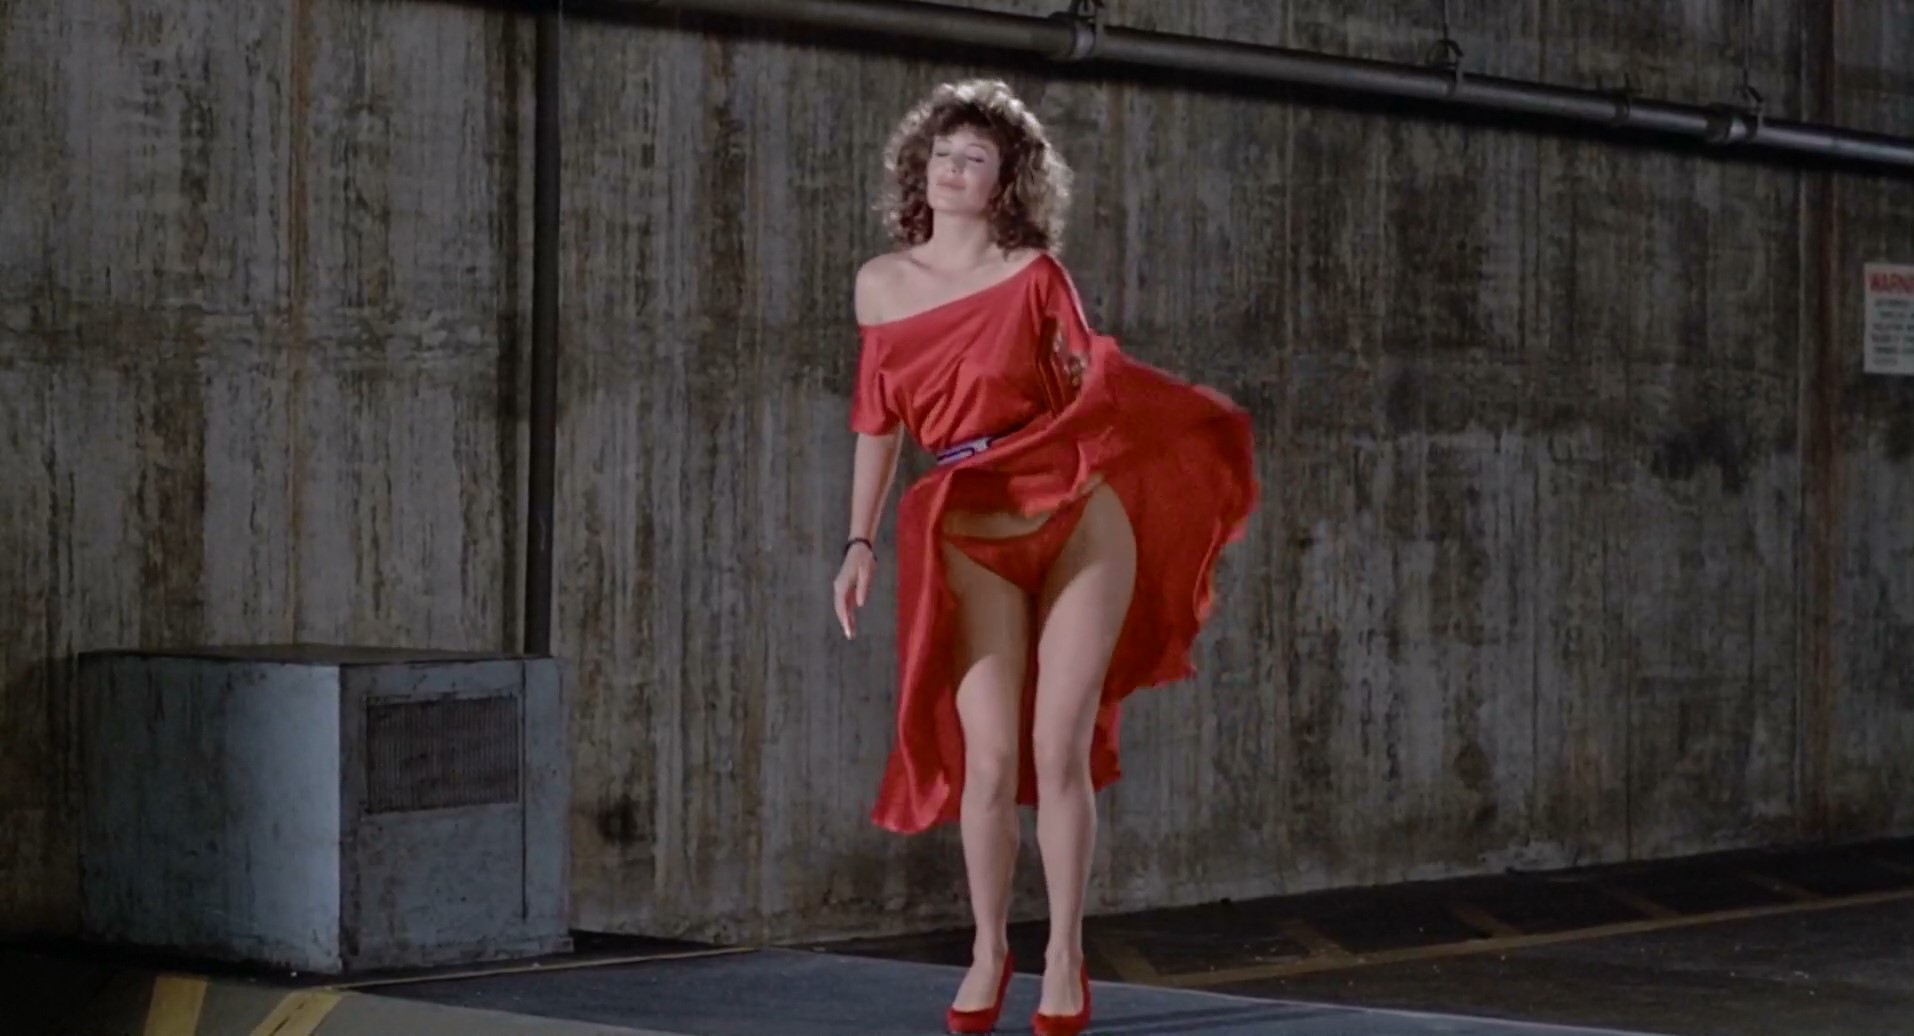 Watch Online - Kelly LeBrock â€“ The Woman in Red (1984) HD 1080p